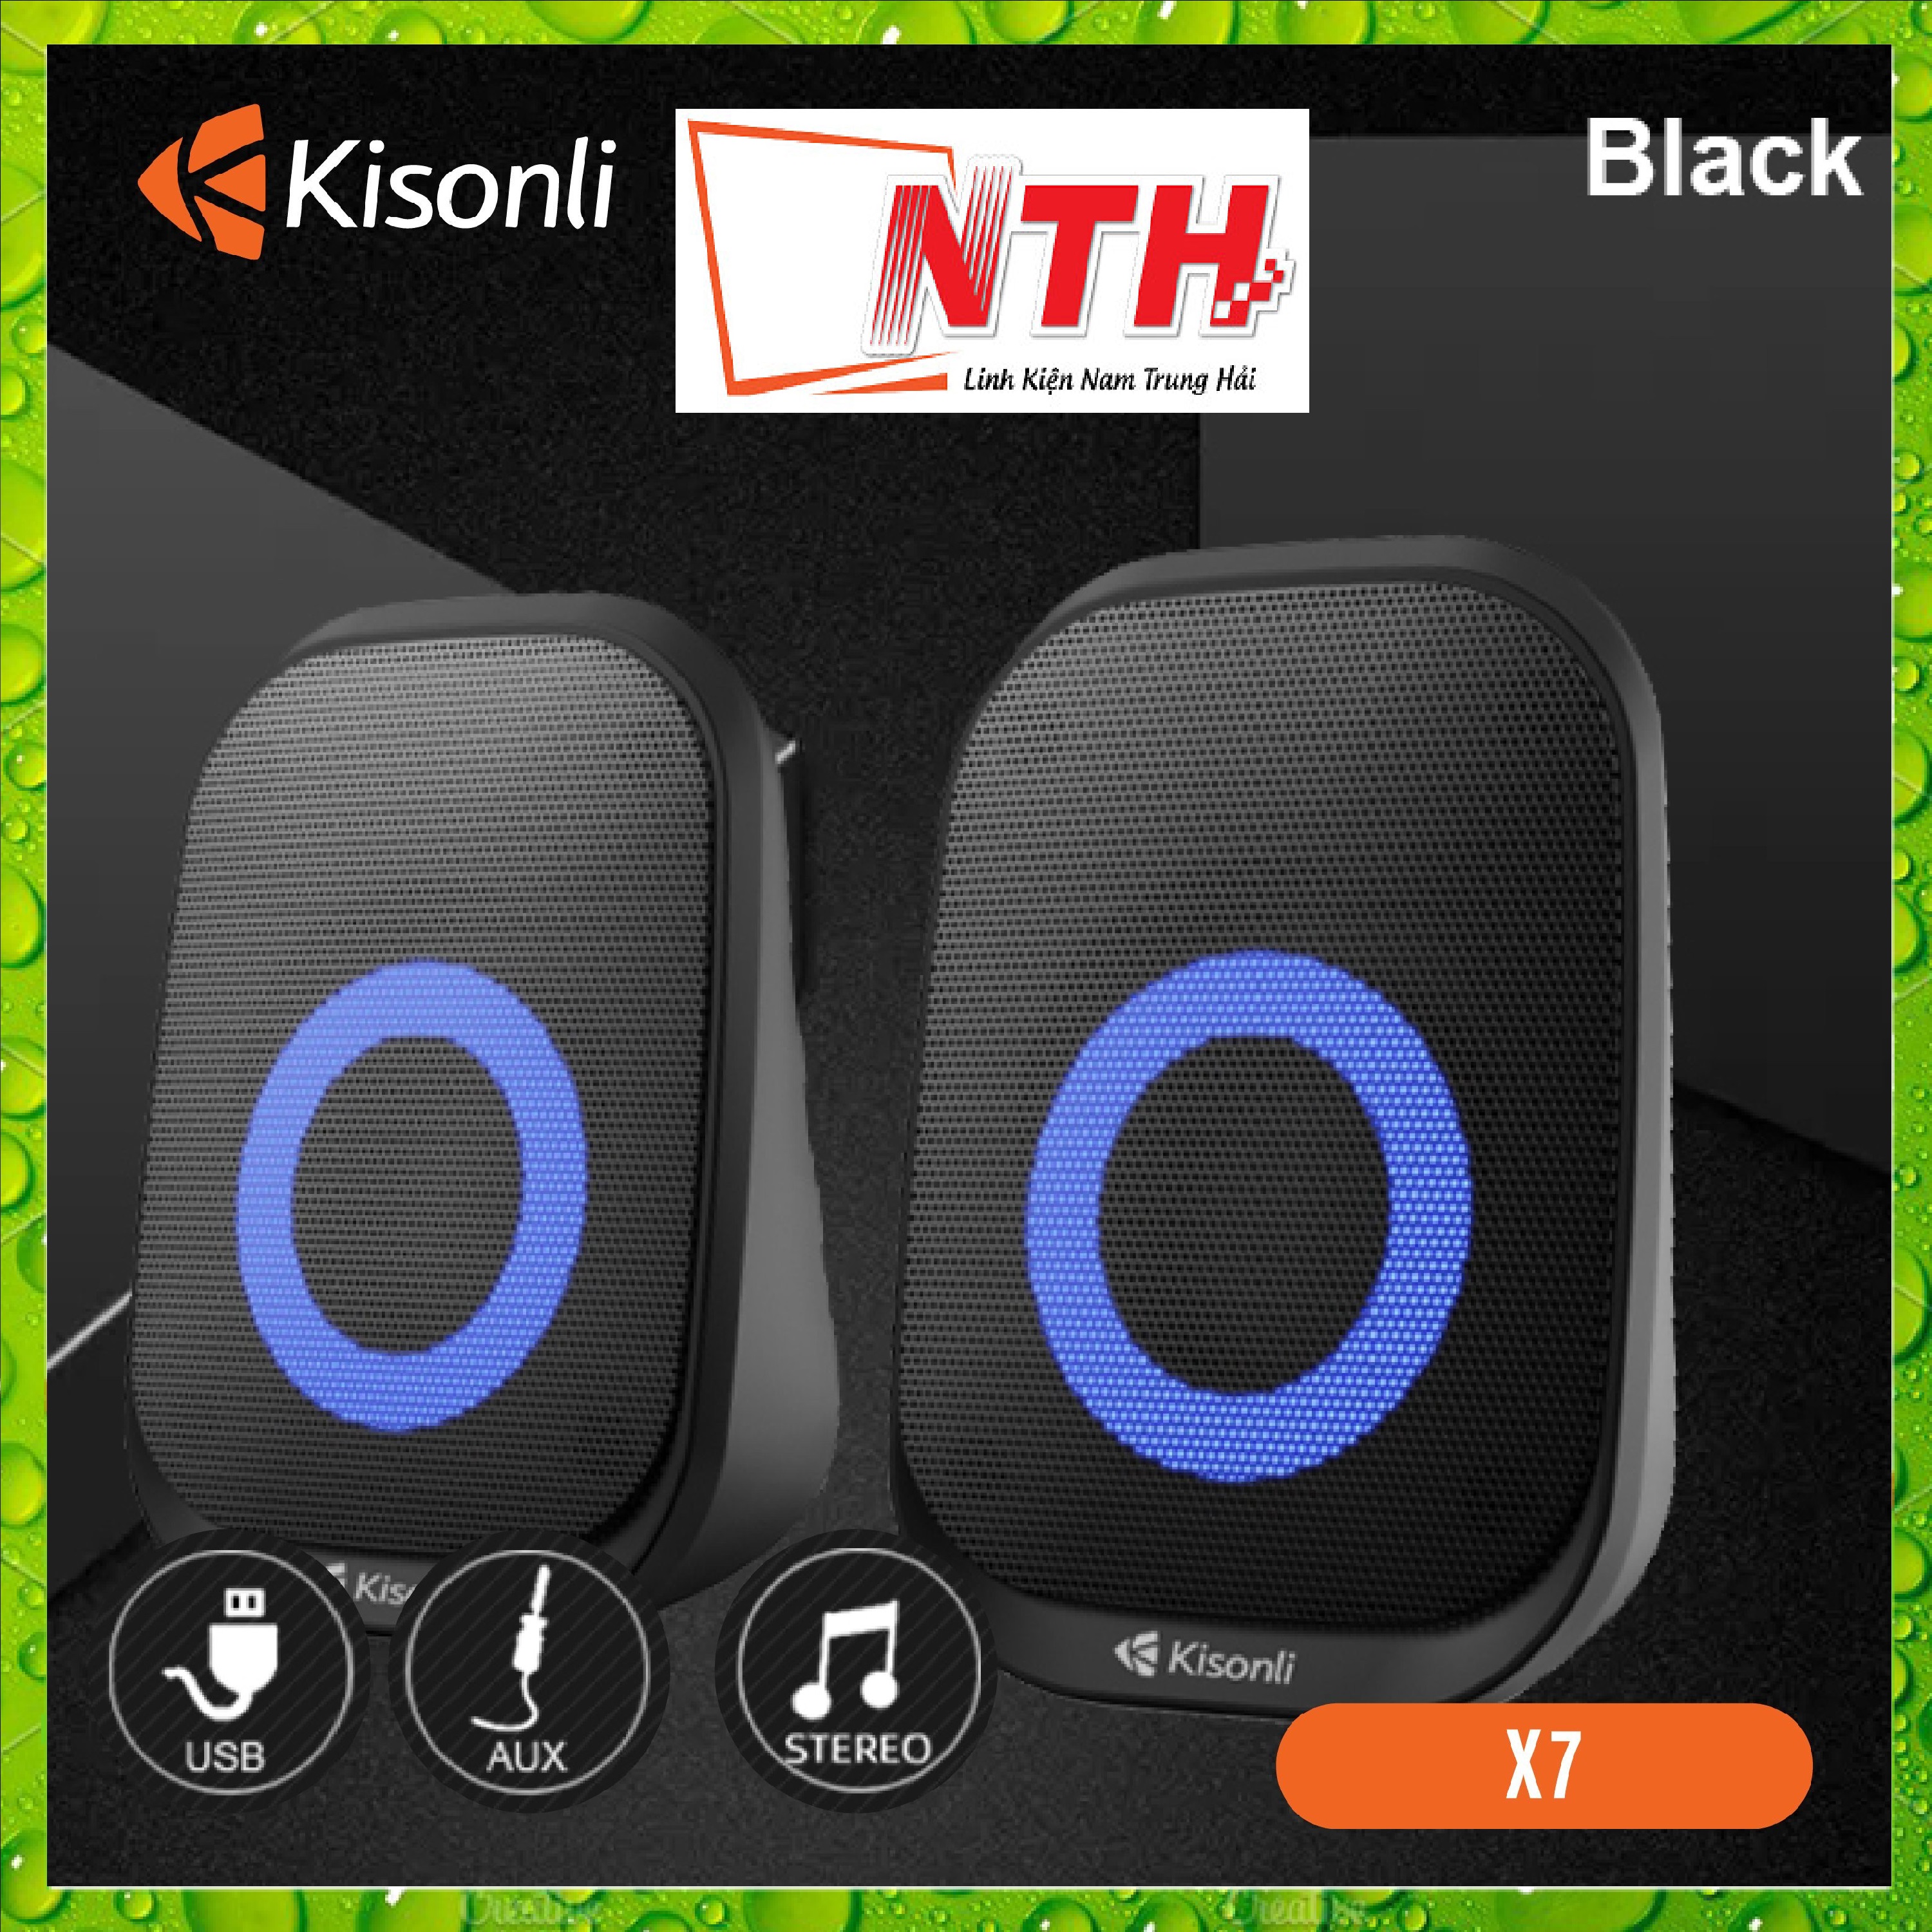 Loa vi tính 2.0 Kisonli X7 Black LED - HT - HÀNG CHÍNH HÃNG